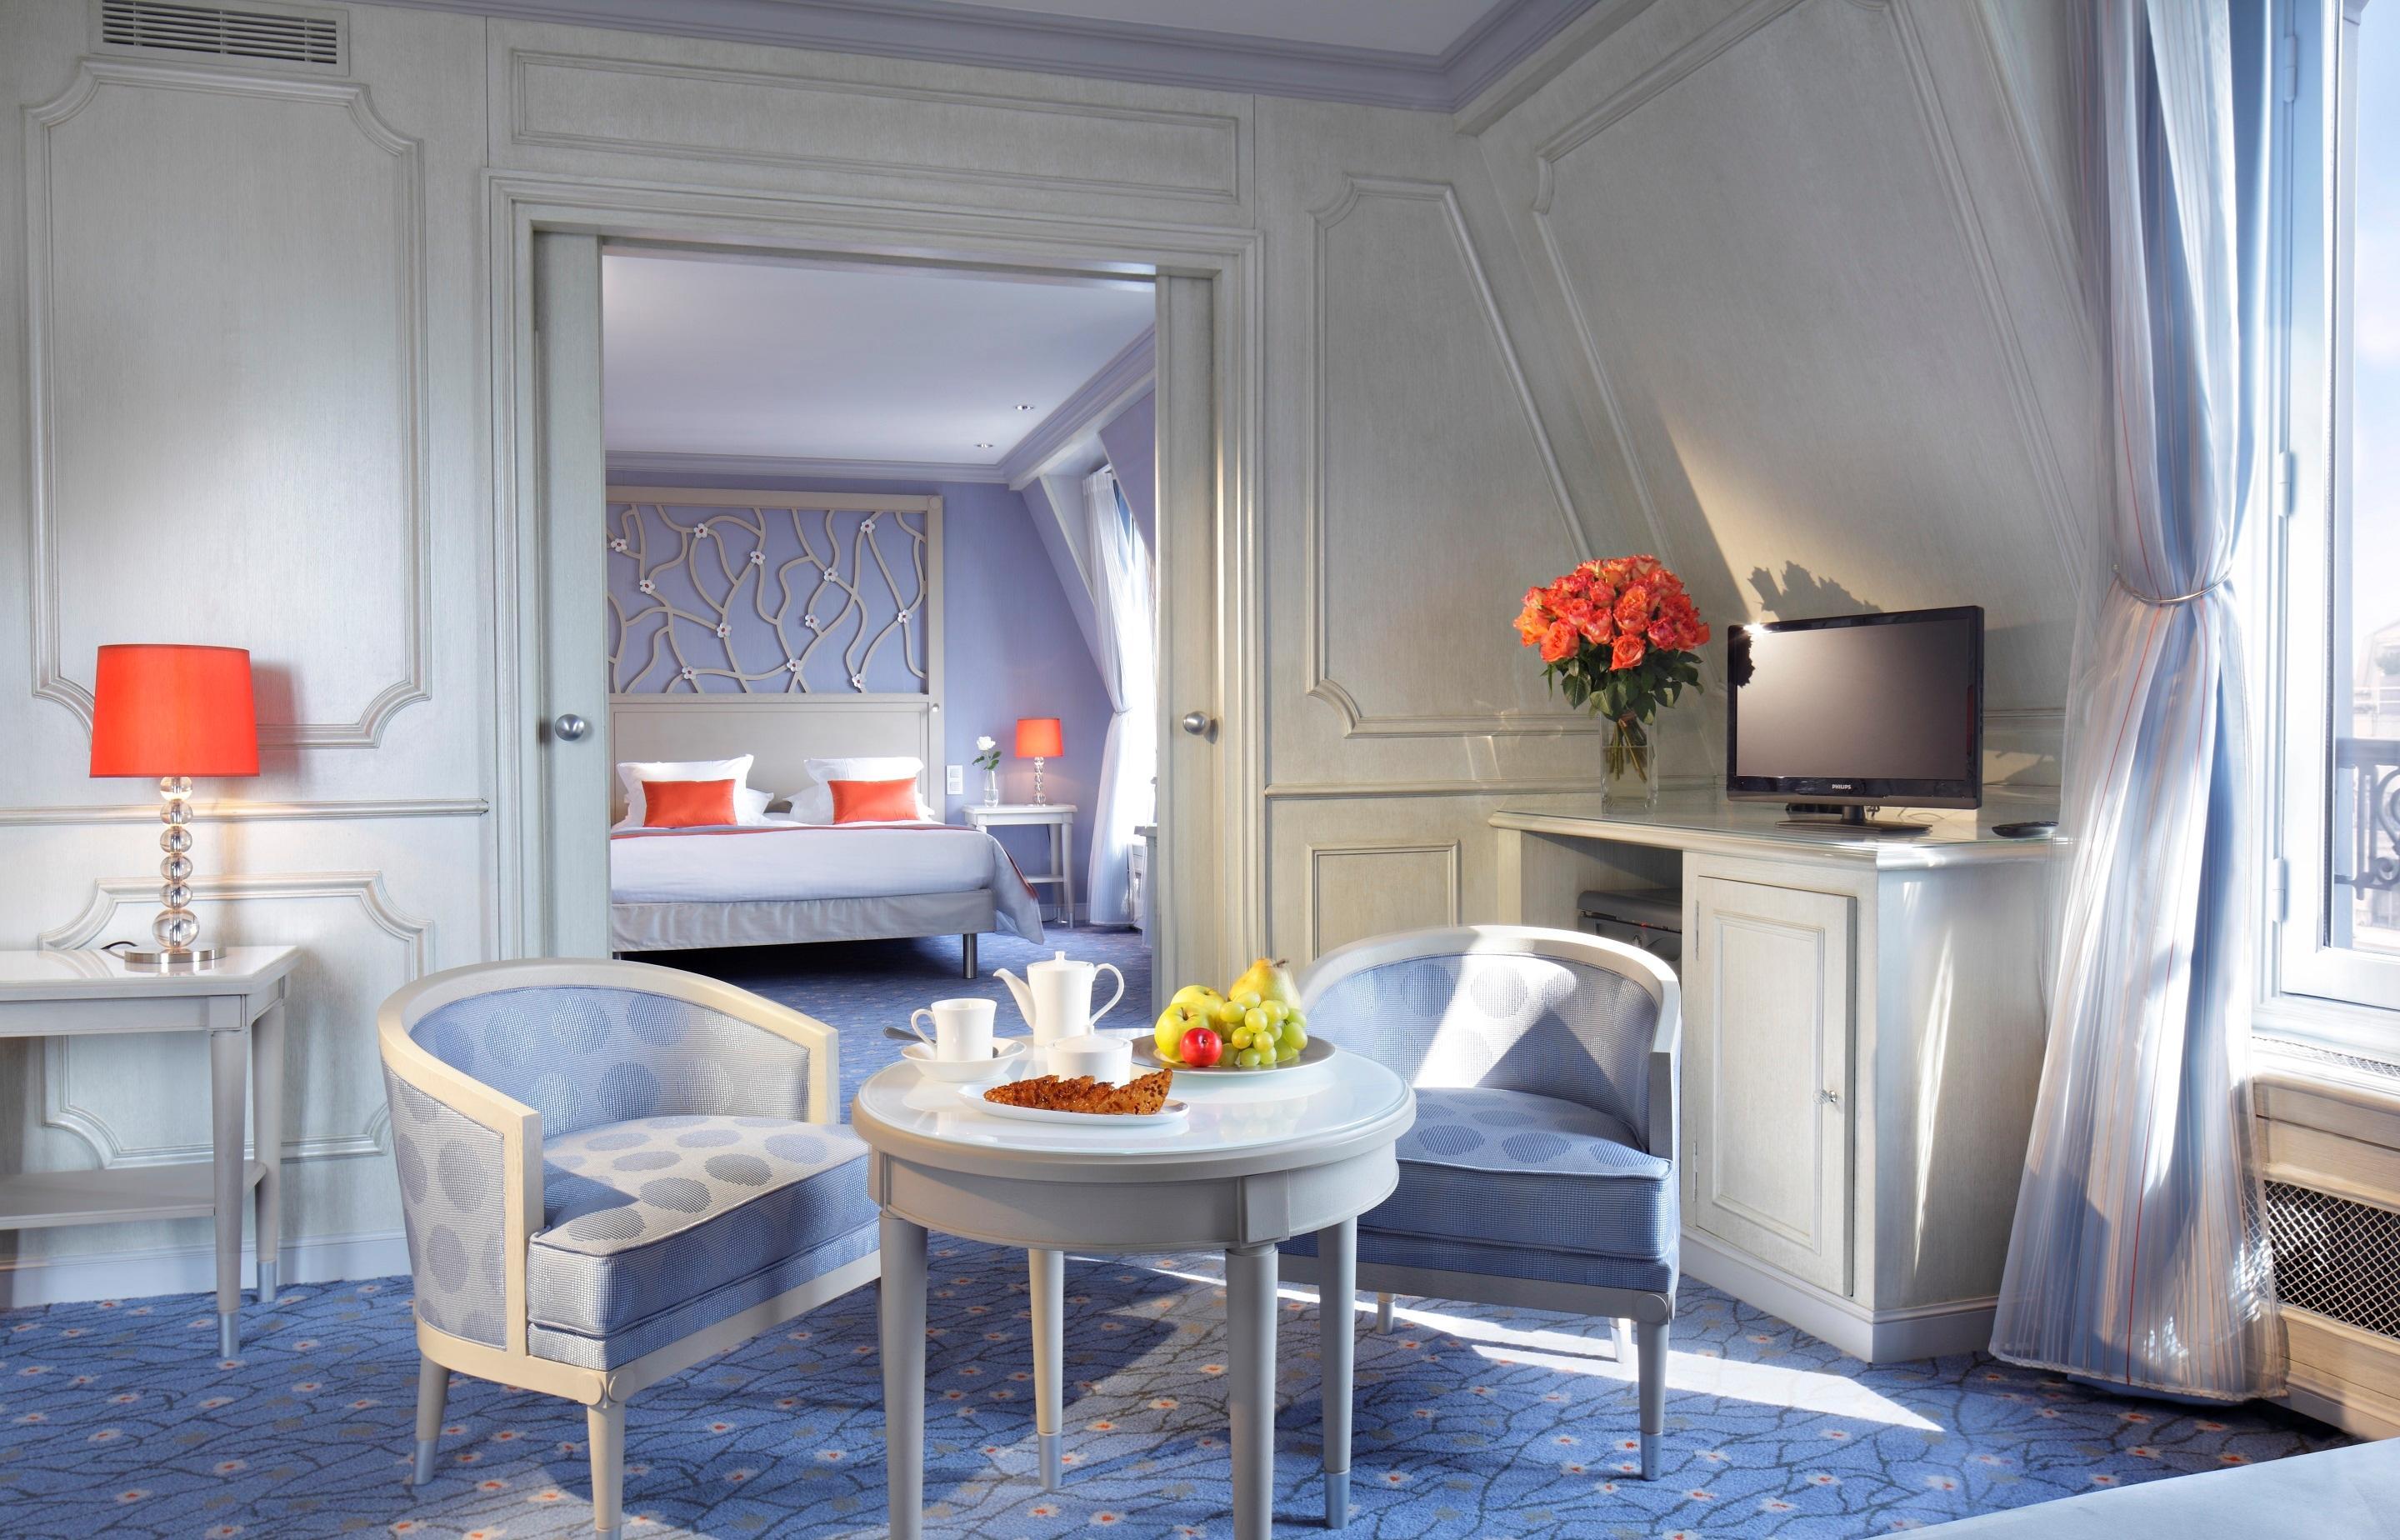 Splendid Etoile Hotell Paris Rum bild